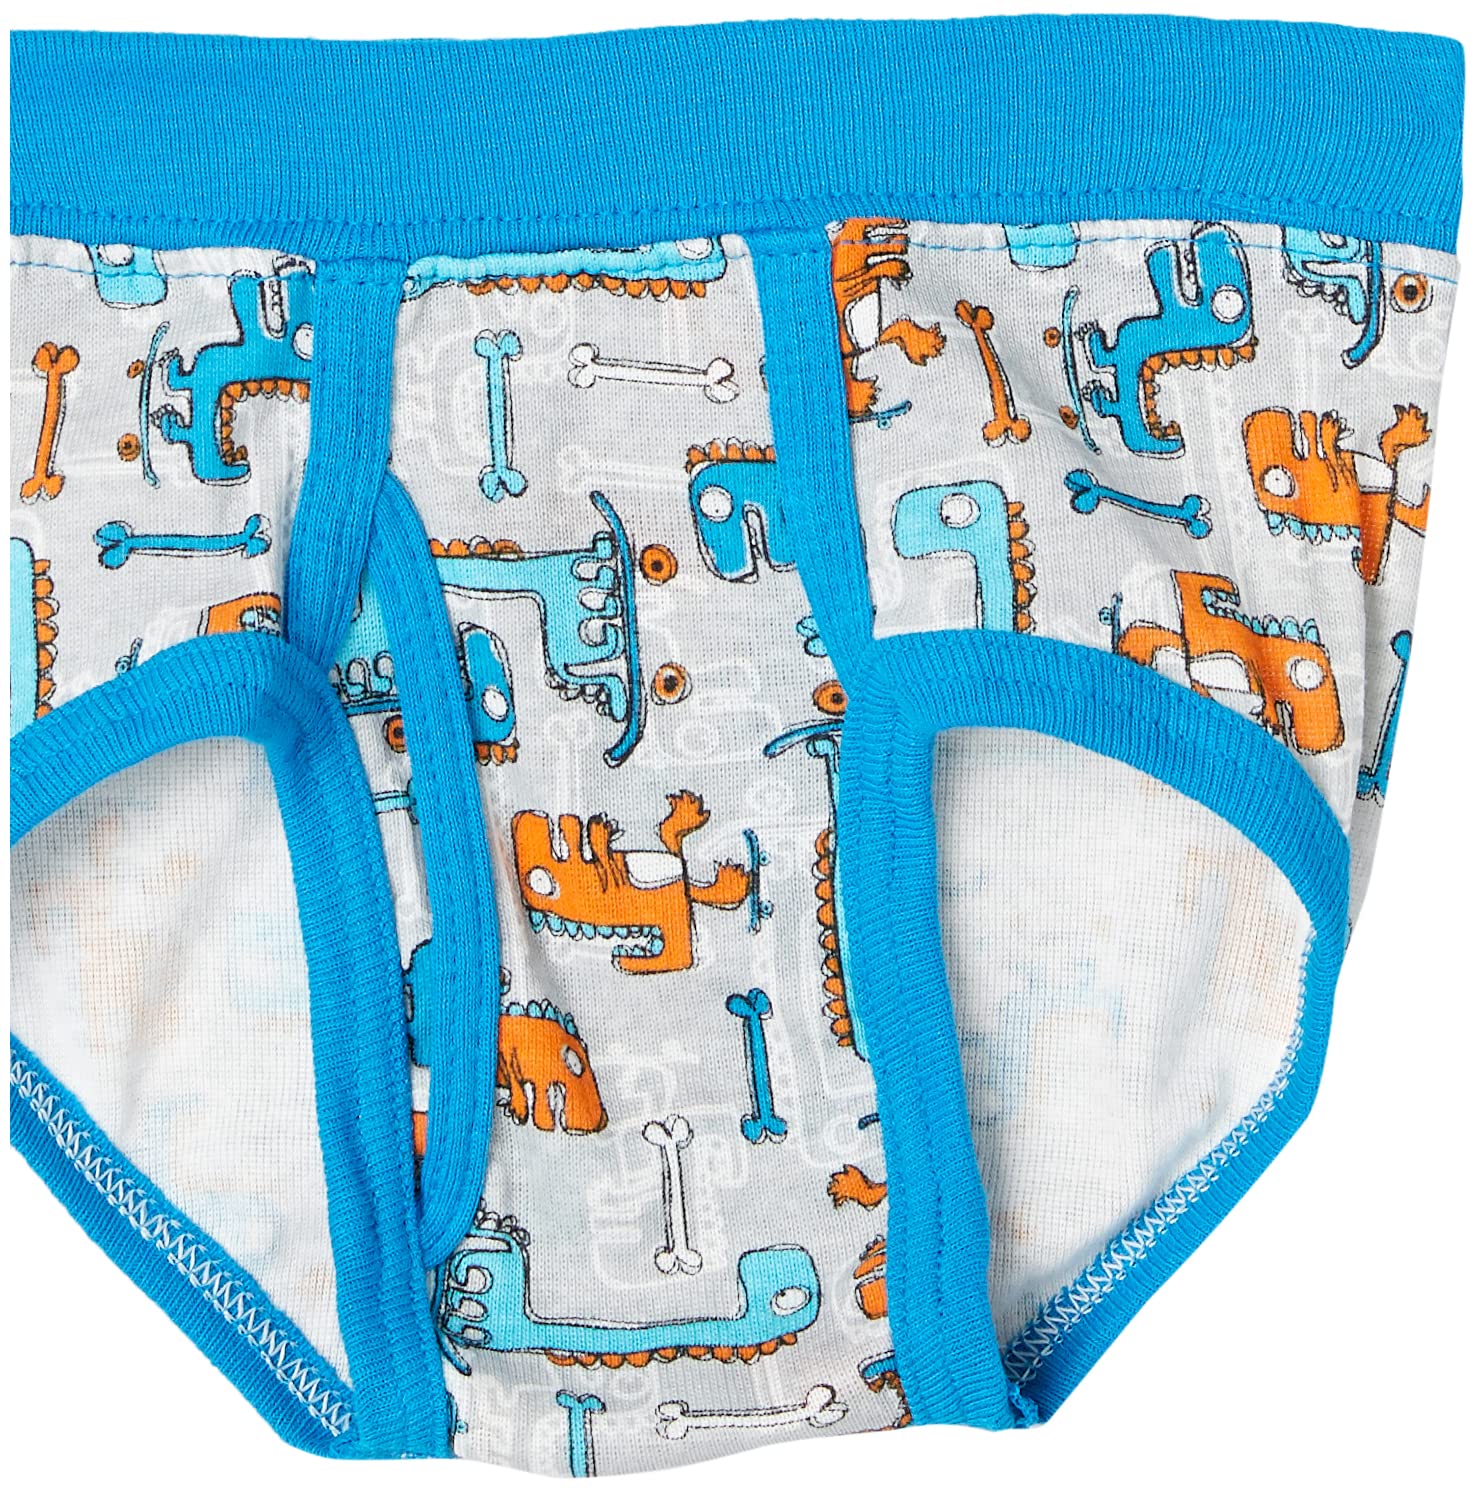 Hanes Toddler Boys' Briefs Pack, Dinosaur Printed Cotton Underwear, 10-Pack